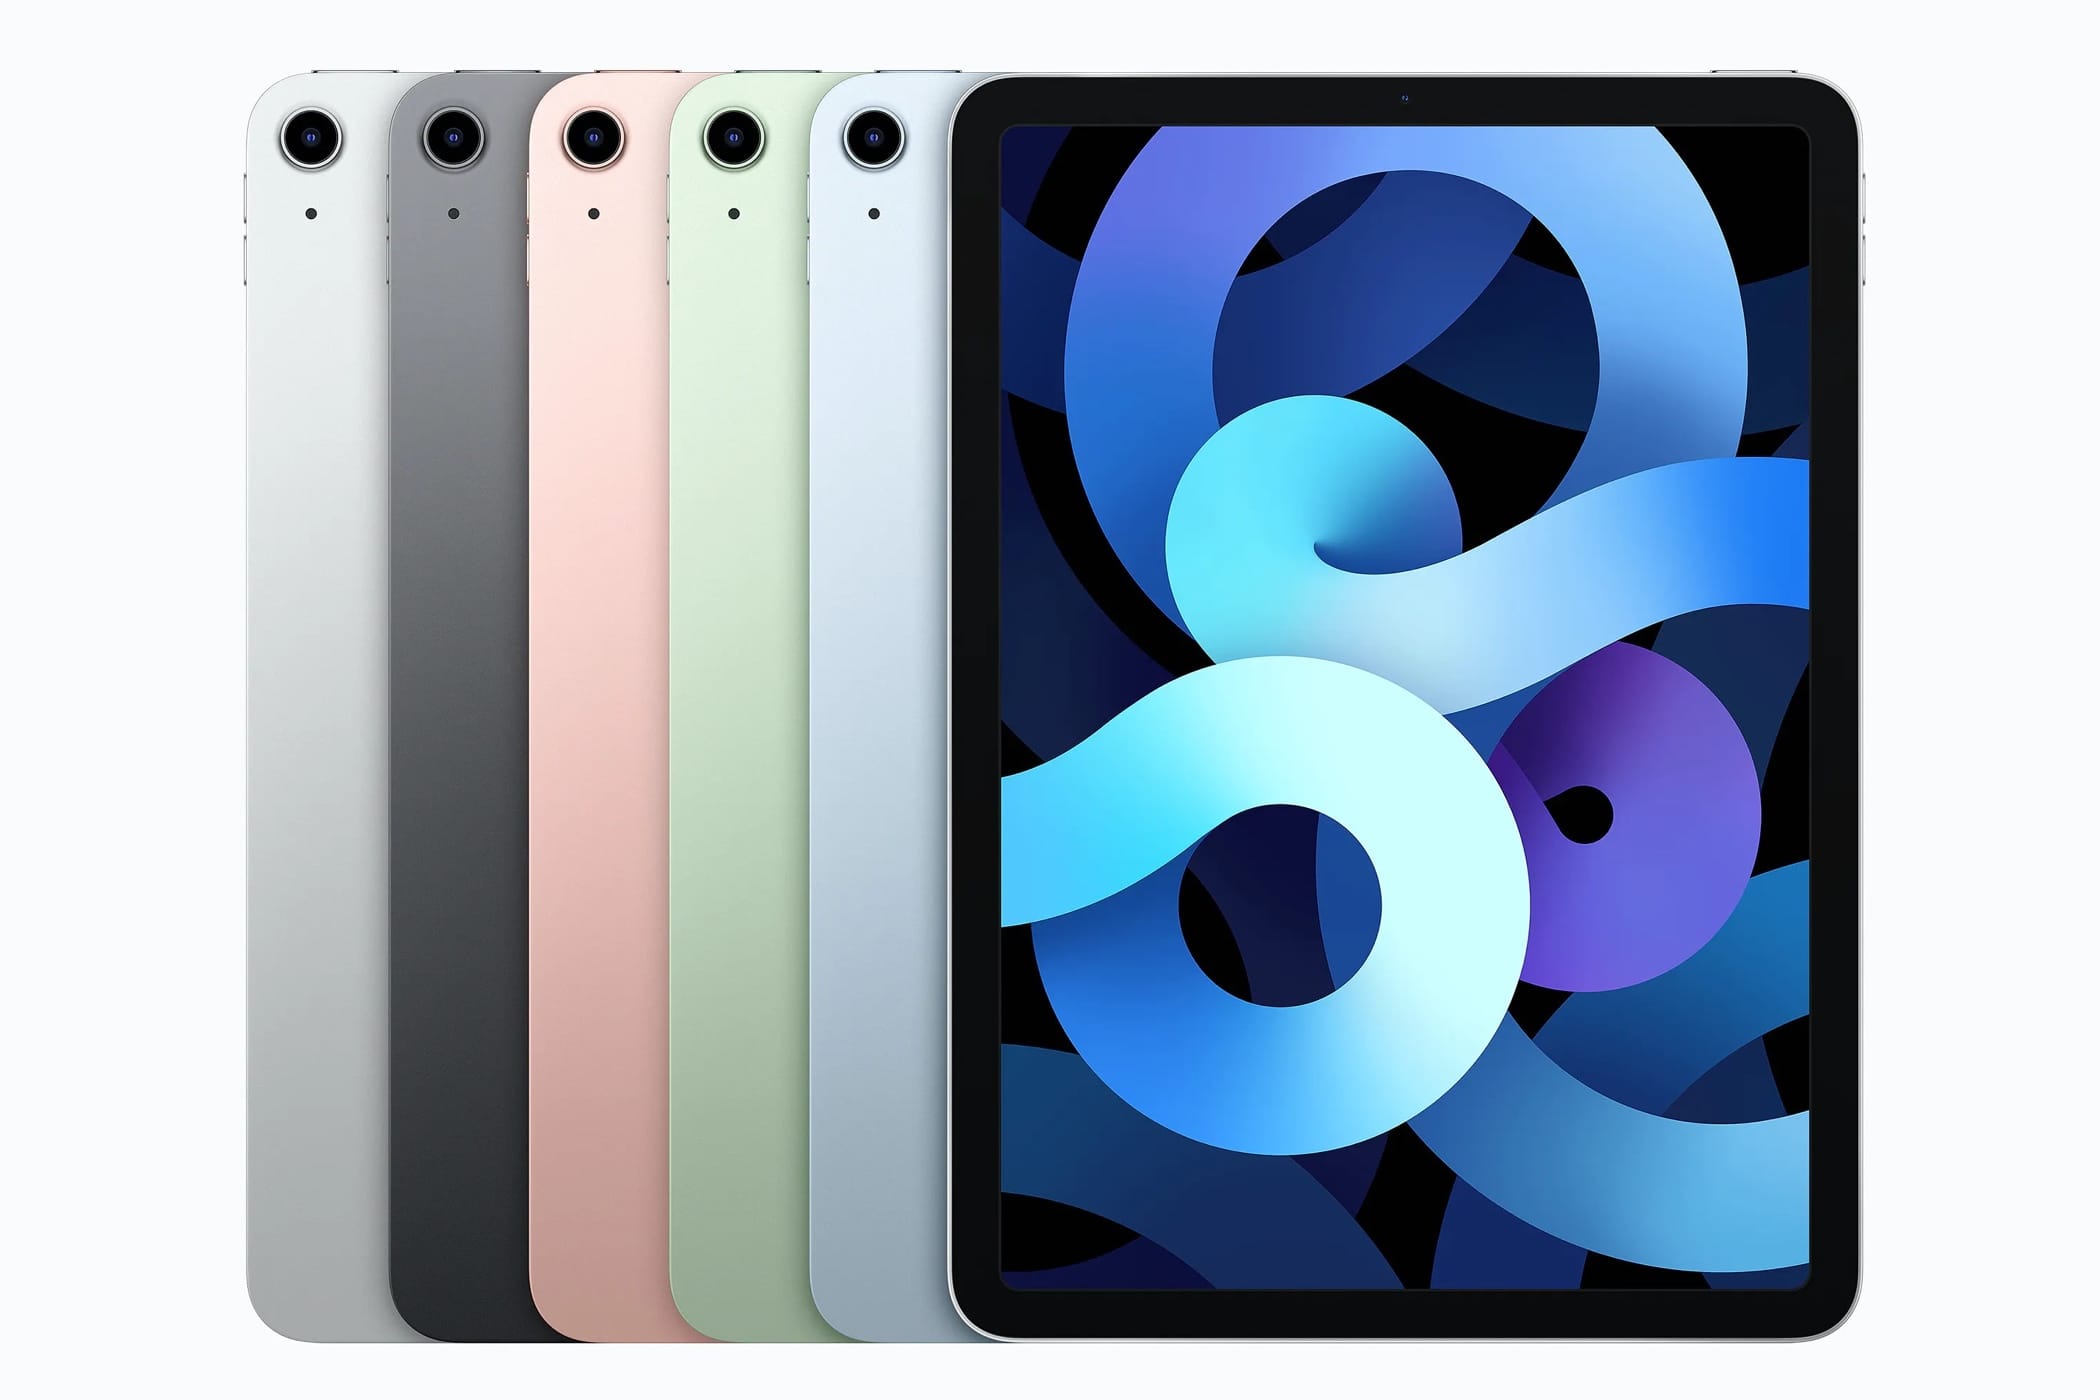 Économisez jusqu'à 100 $: Apple commence à vendre des iPad Air 4 remis à neuf